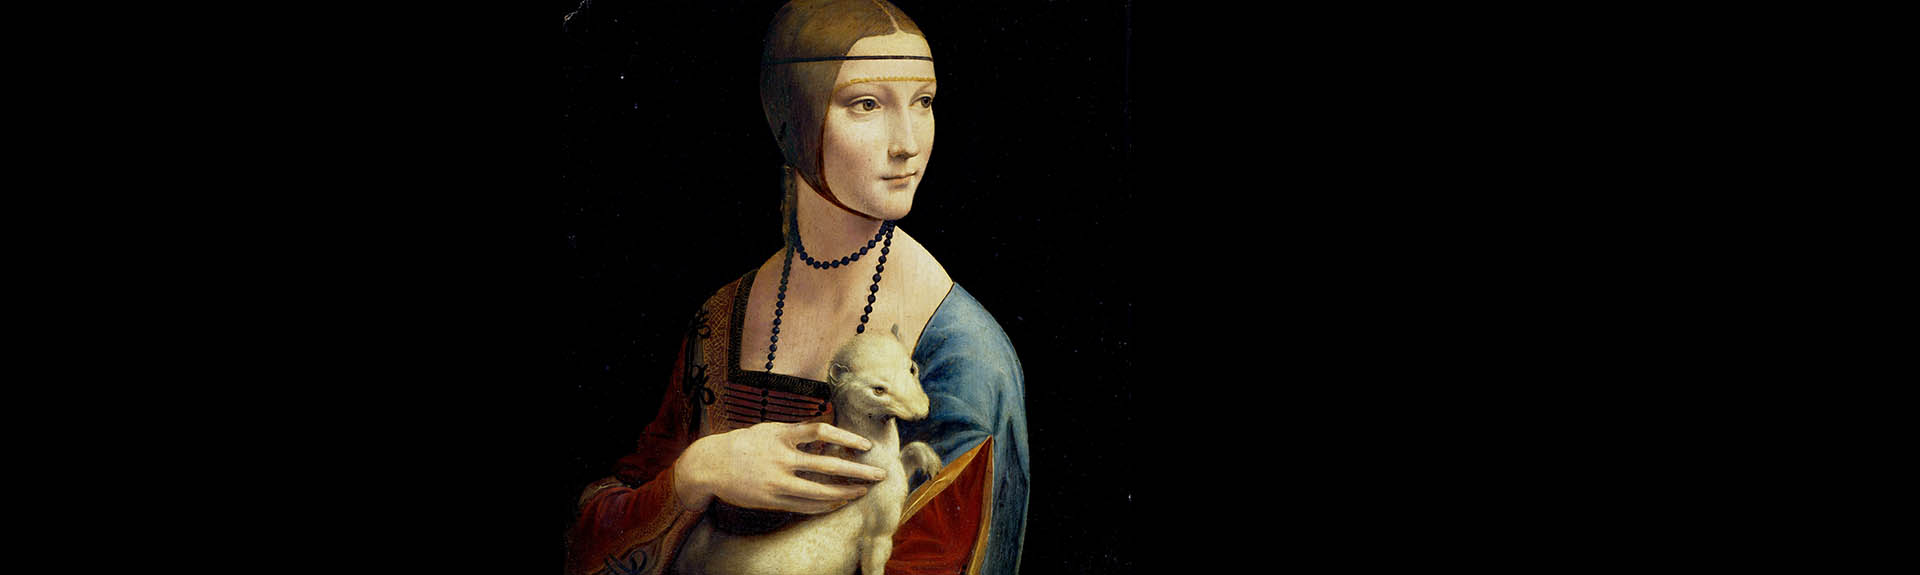 header représentant "La dame à l'hermine" de Léonard de Vinci